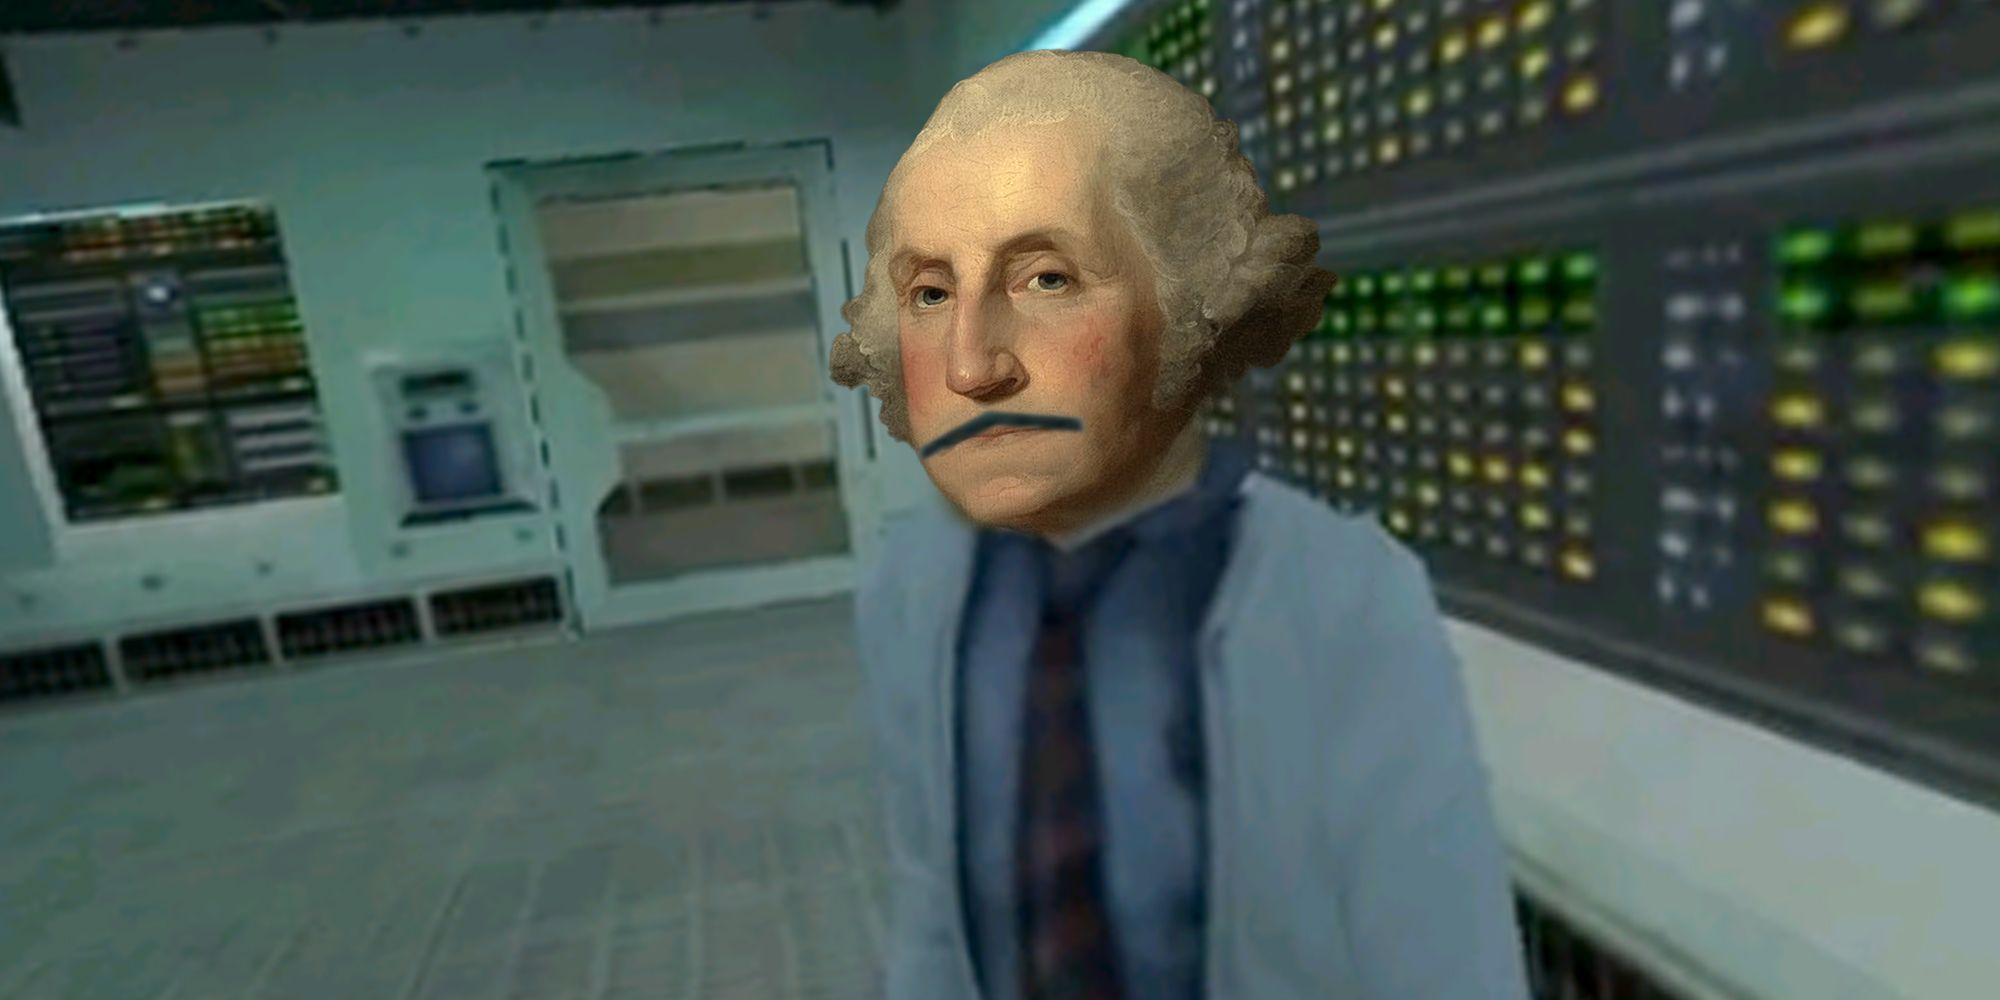 Half-Life 'Einstein' Scientist with president George Washington's face instead